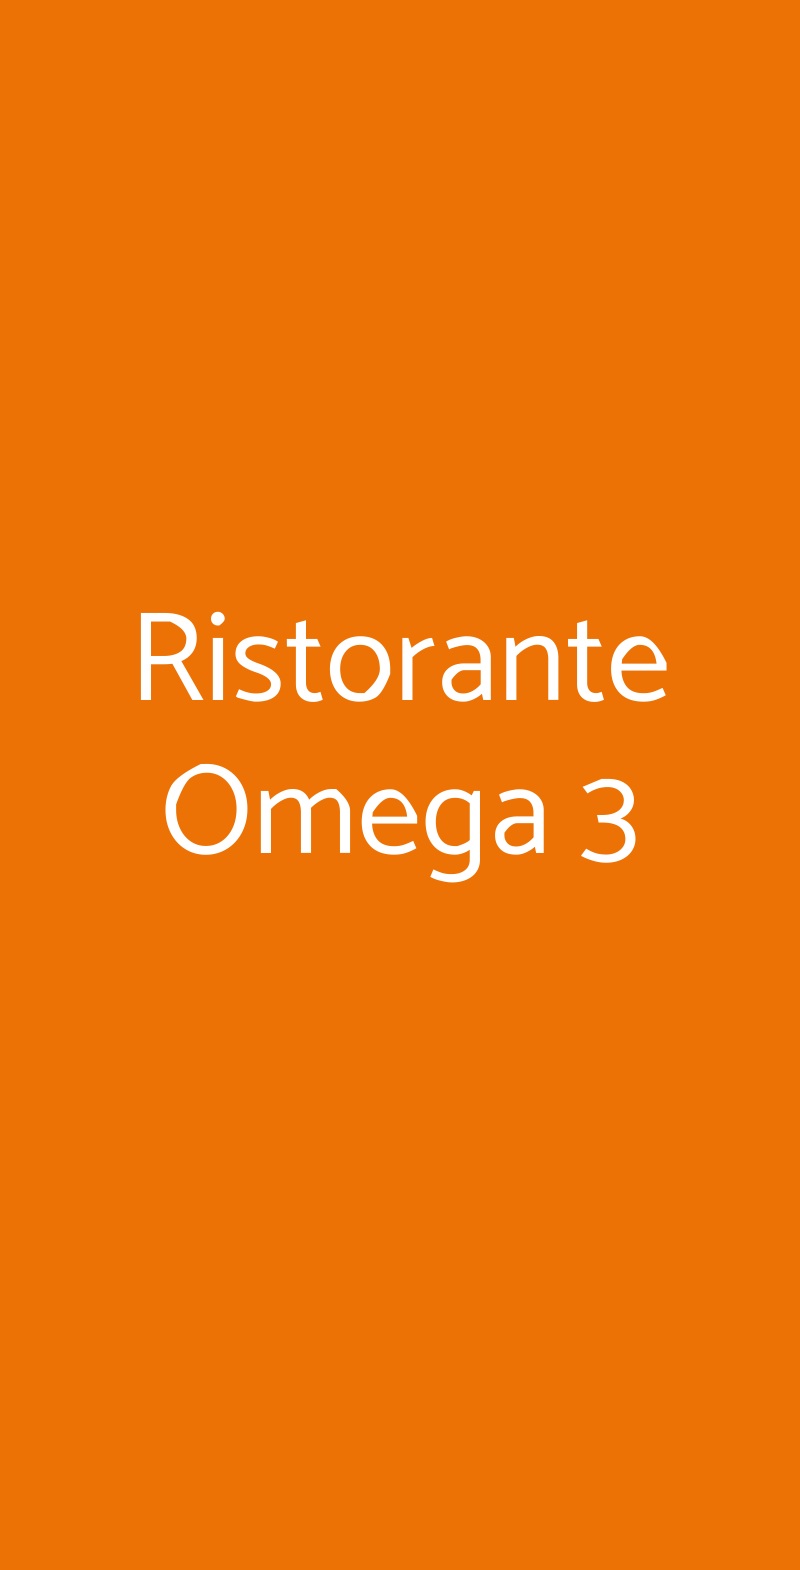 Ristorante Omega 3 Milano menù 1 pagina